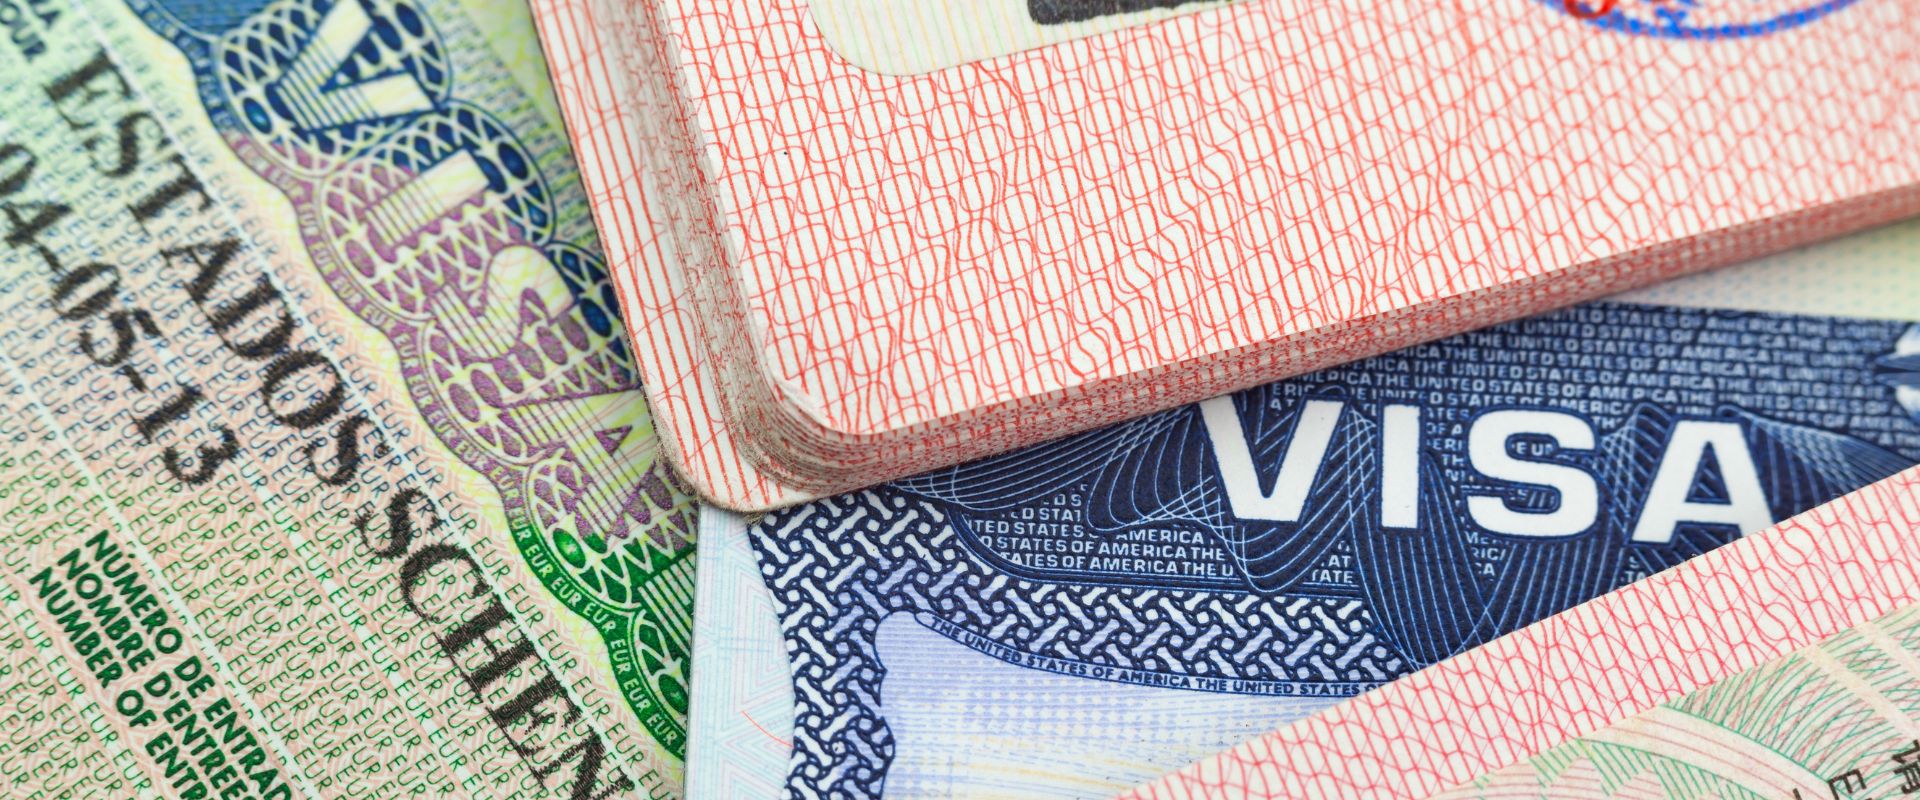 Tanzania Visa Cost